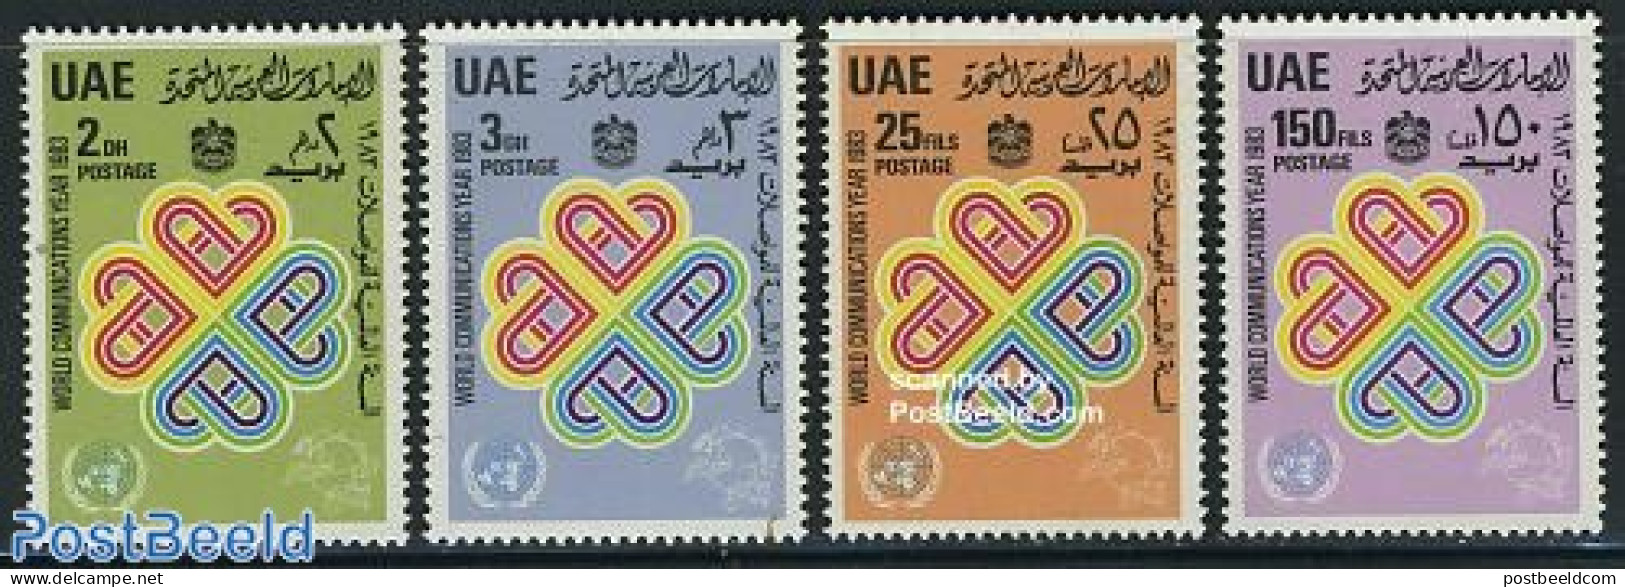 United Arab Emirates 1983 World Communication Year 4v, Mint NH, Science - Int. Communication Year 1983 - Telecommunica.. - Telekom